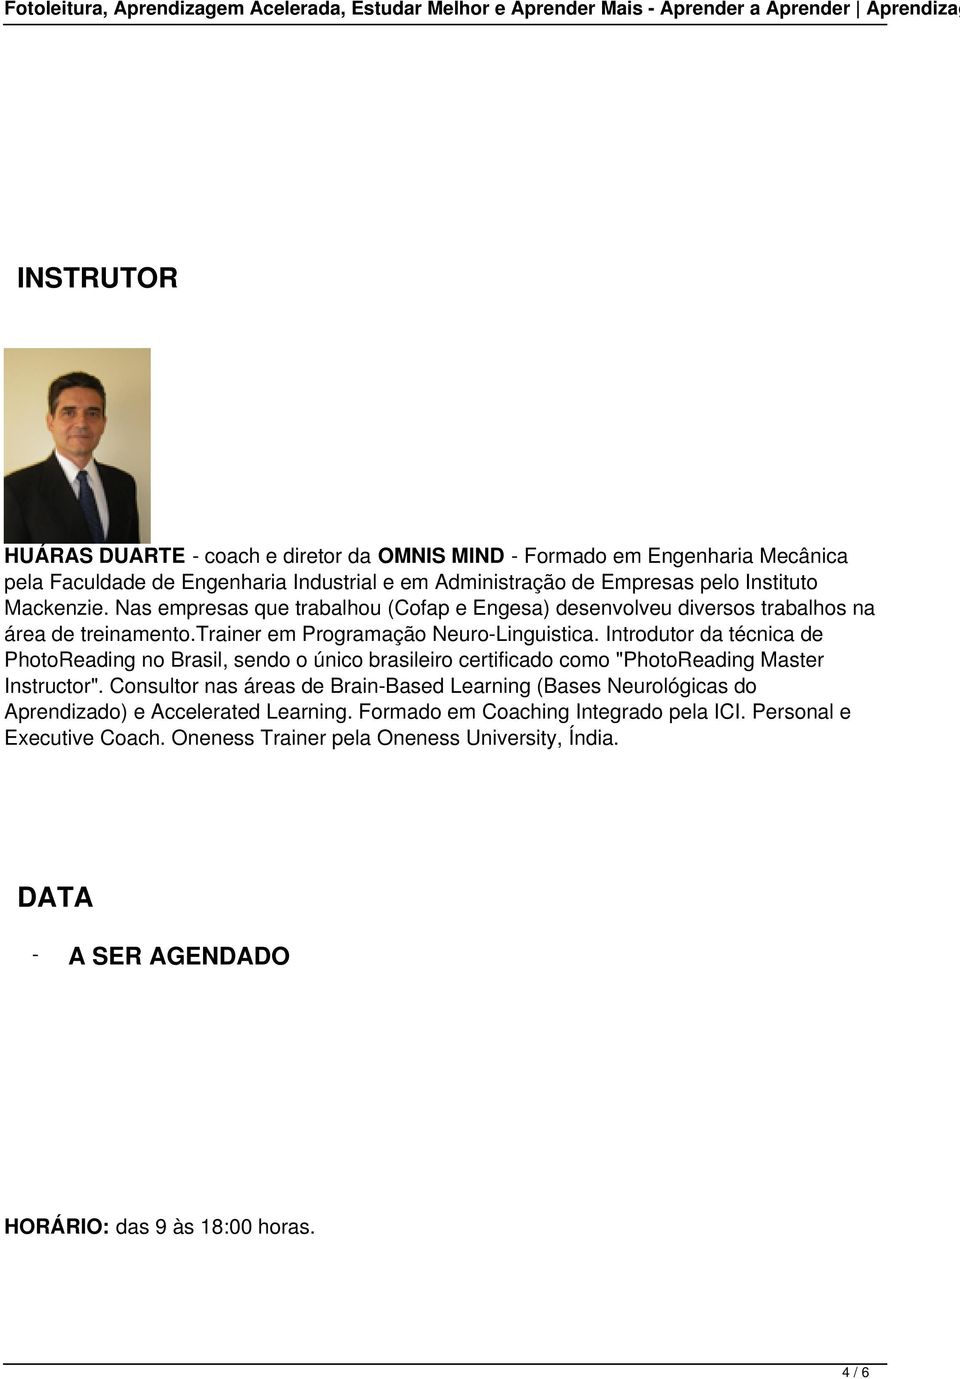 trainer em Programação NeuroLinguistica. Introdutor da técnica de PhotoReading no Brasil, sendo o único brasileiro certificado como "PhotoReading Master Instructor".